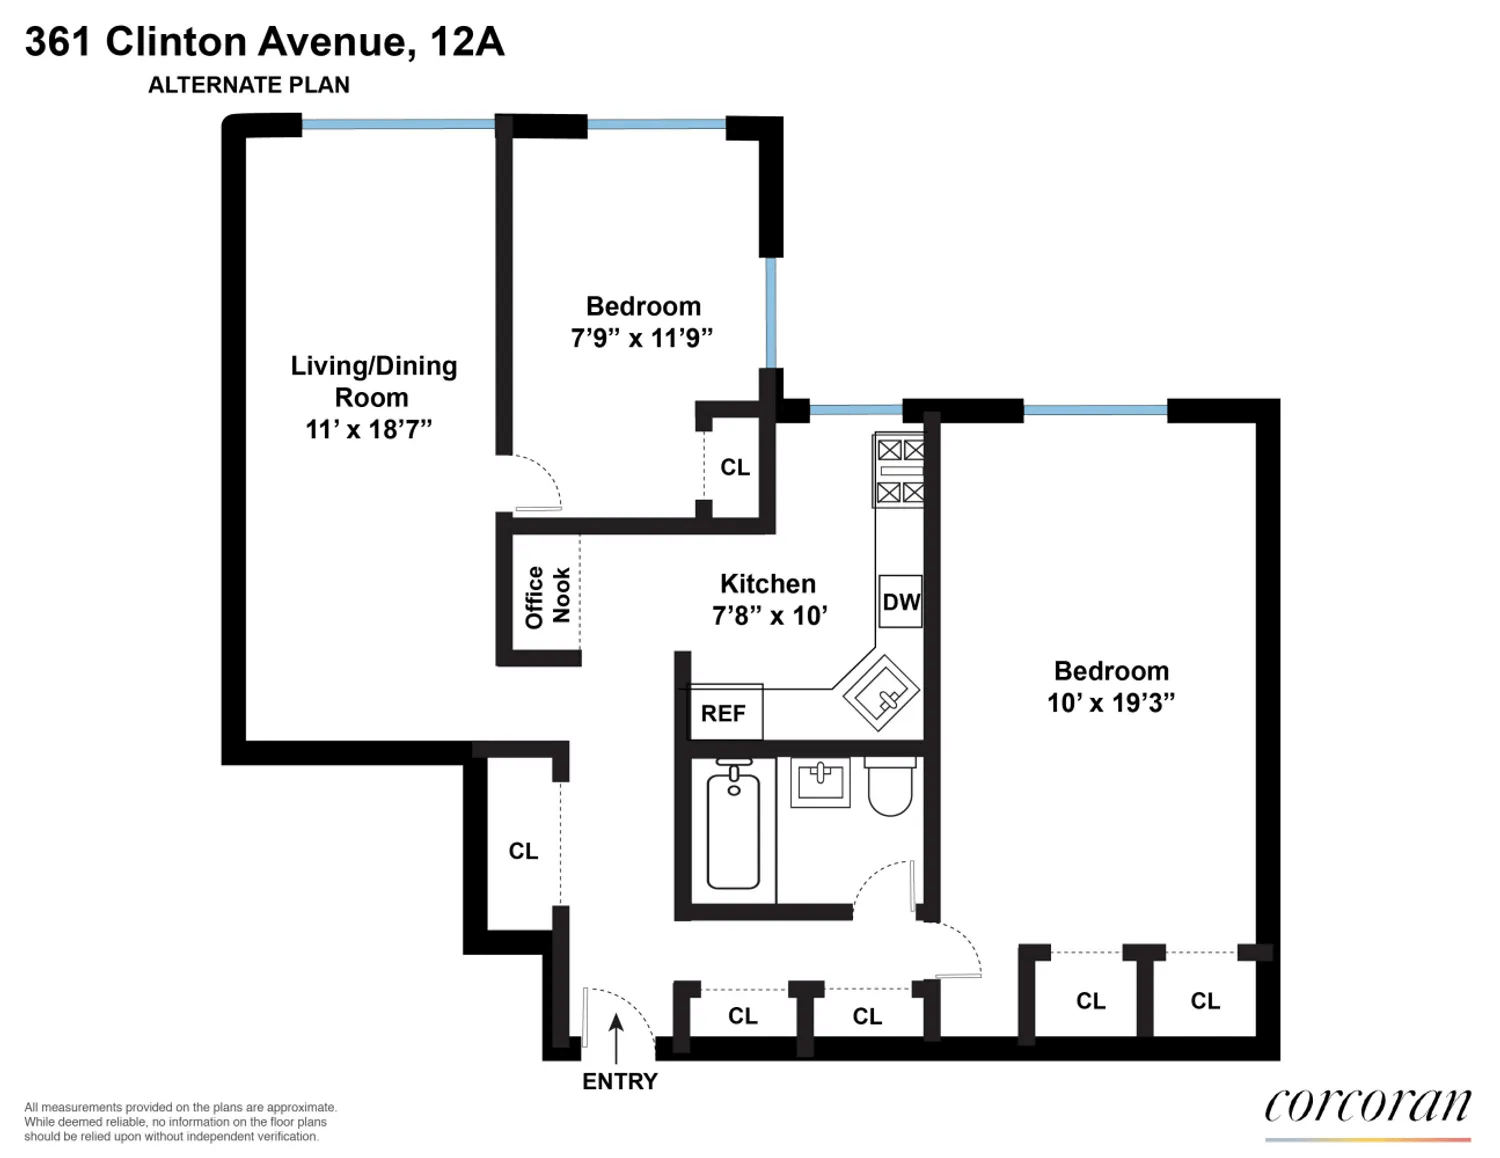 alternate floor plan with second bedroom